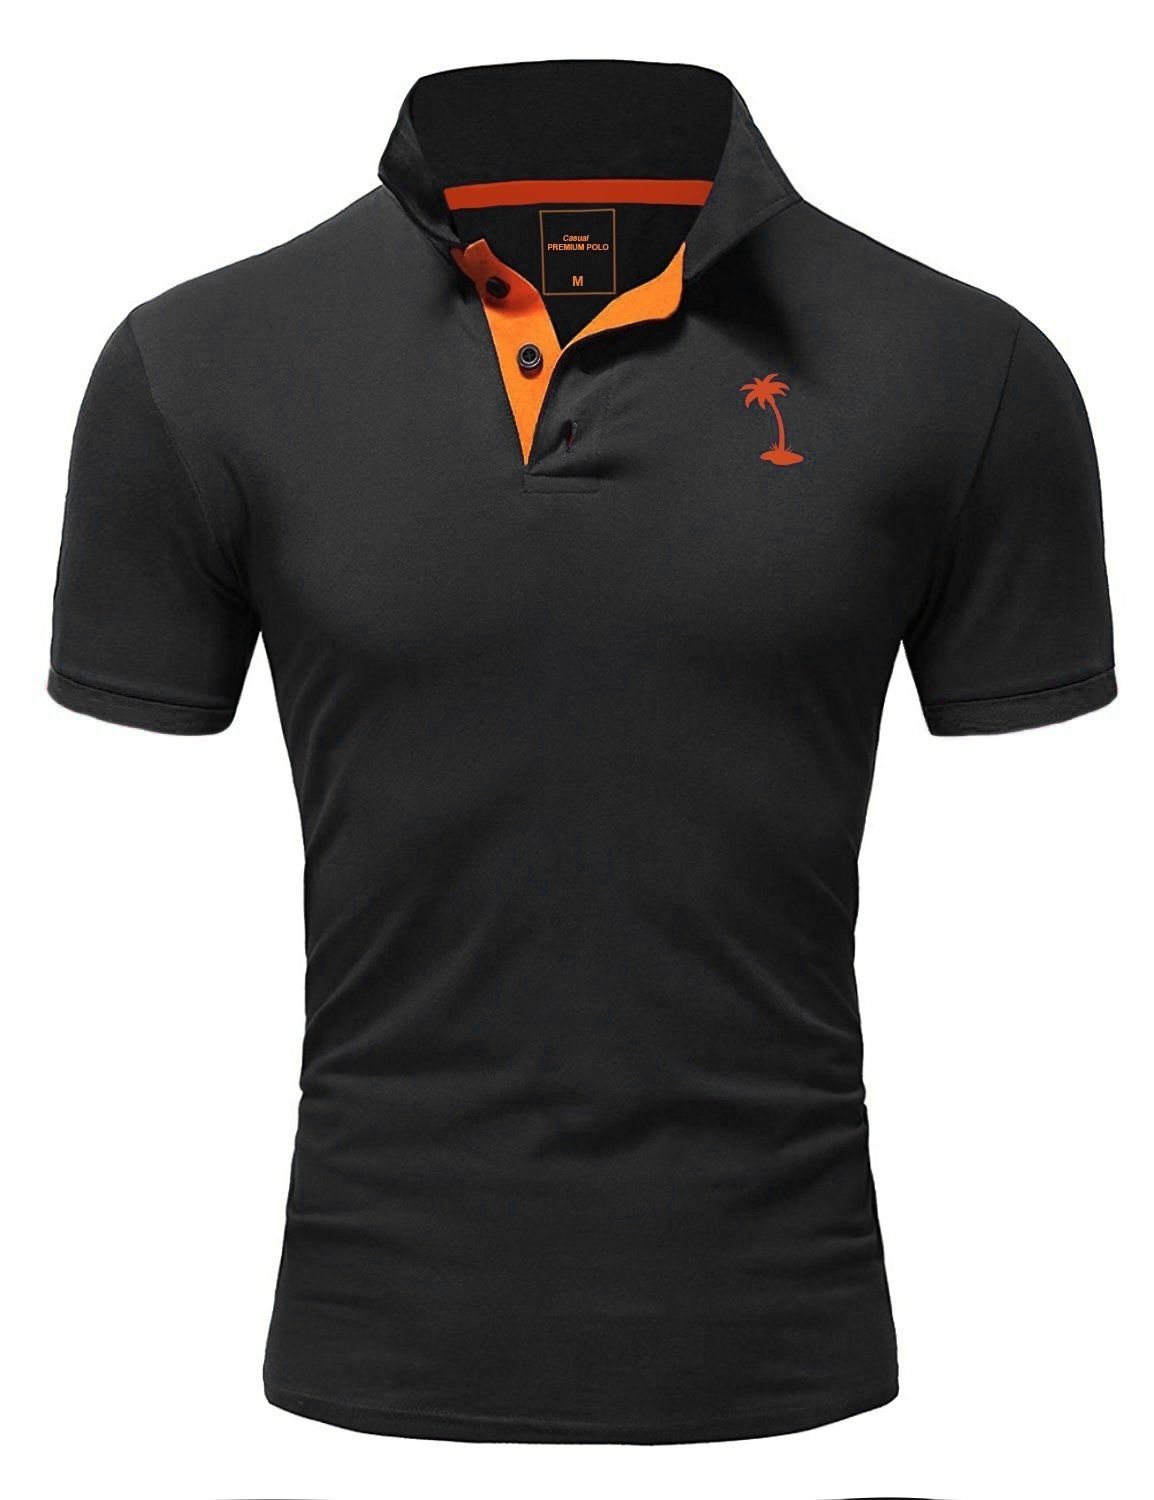 CAROY behype mit Poloshirt kontrastfarbener Stickerei schwarz-orange